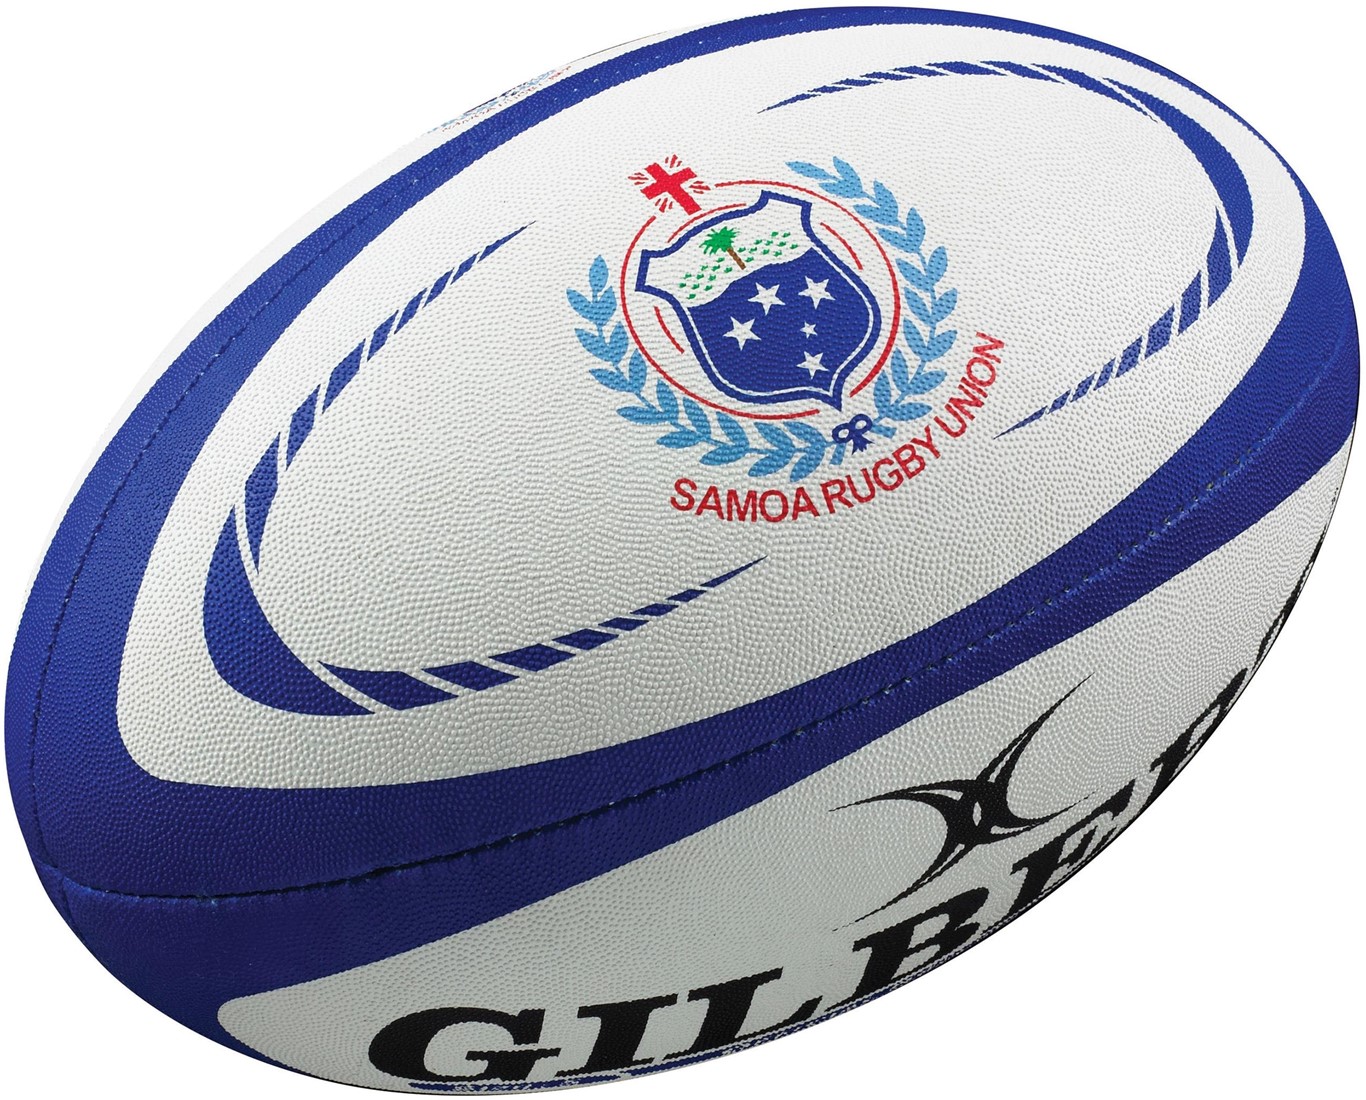 Ballon rugby supporter france t5, jeux exterieurs et sports